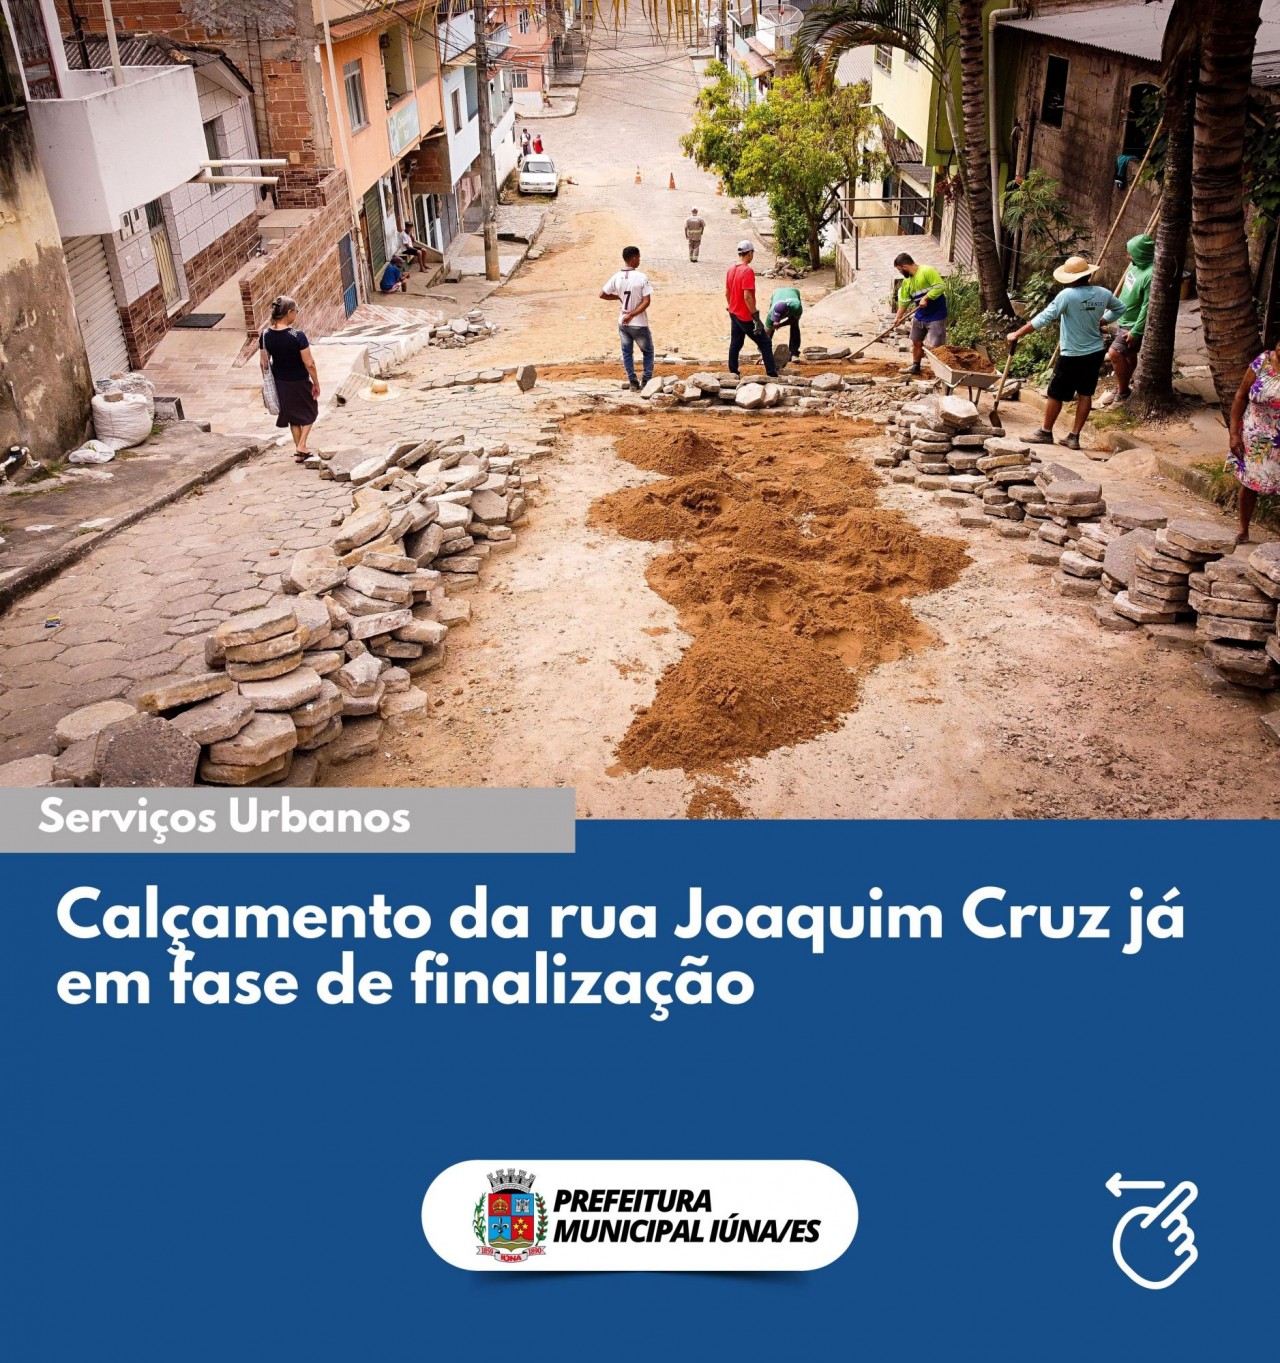 Calçamento da rua Joaquim Cruz já em fase de finalização.